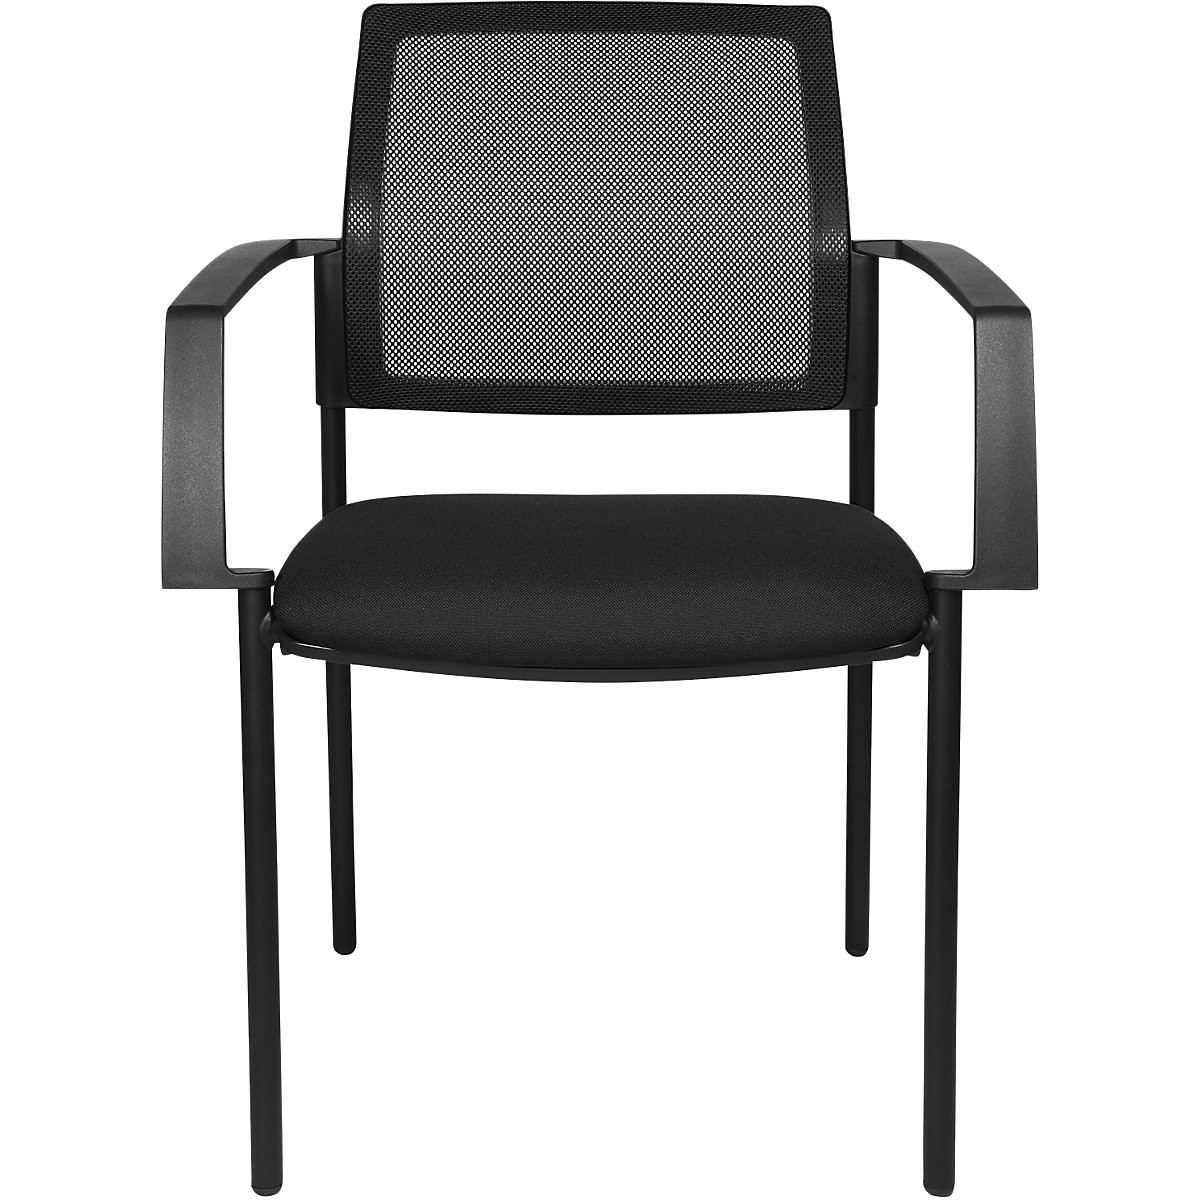 Síťovaná stohovací židle - Topstar